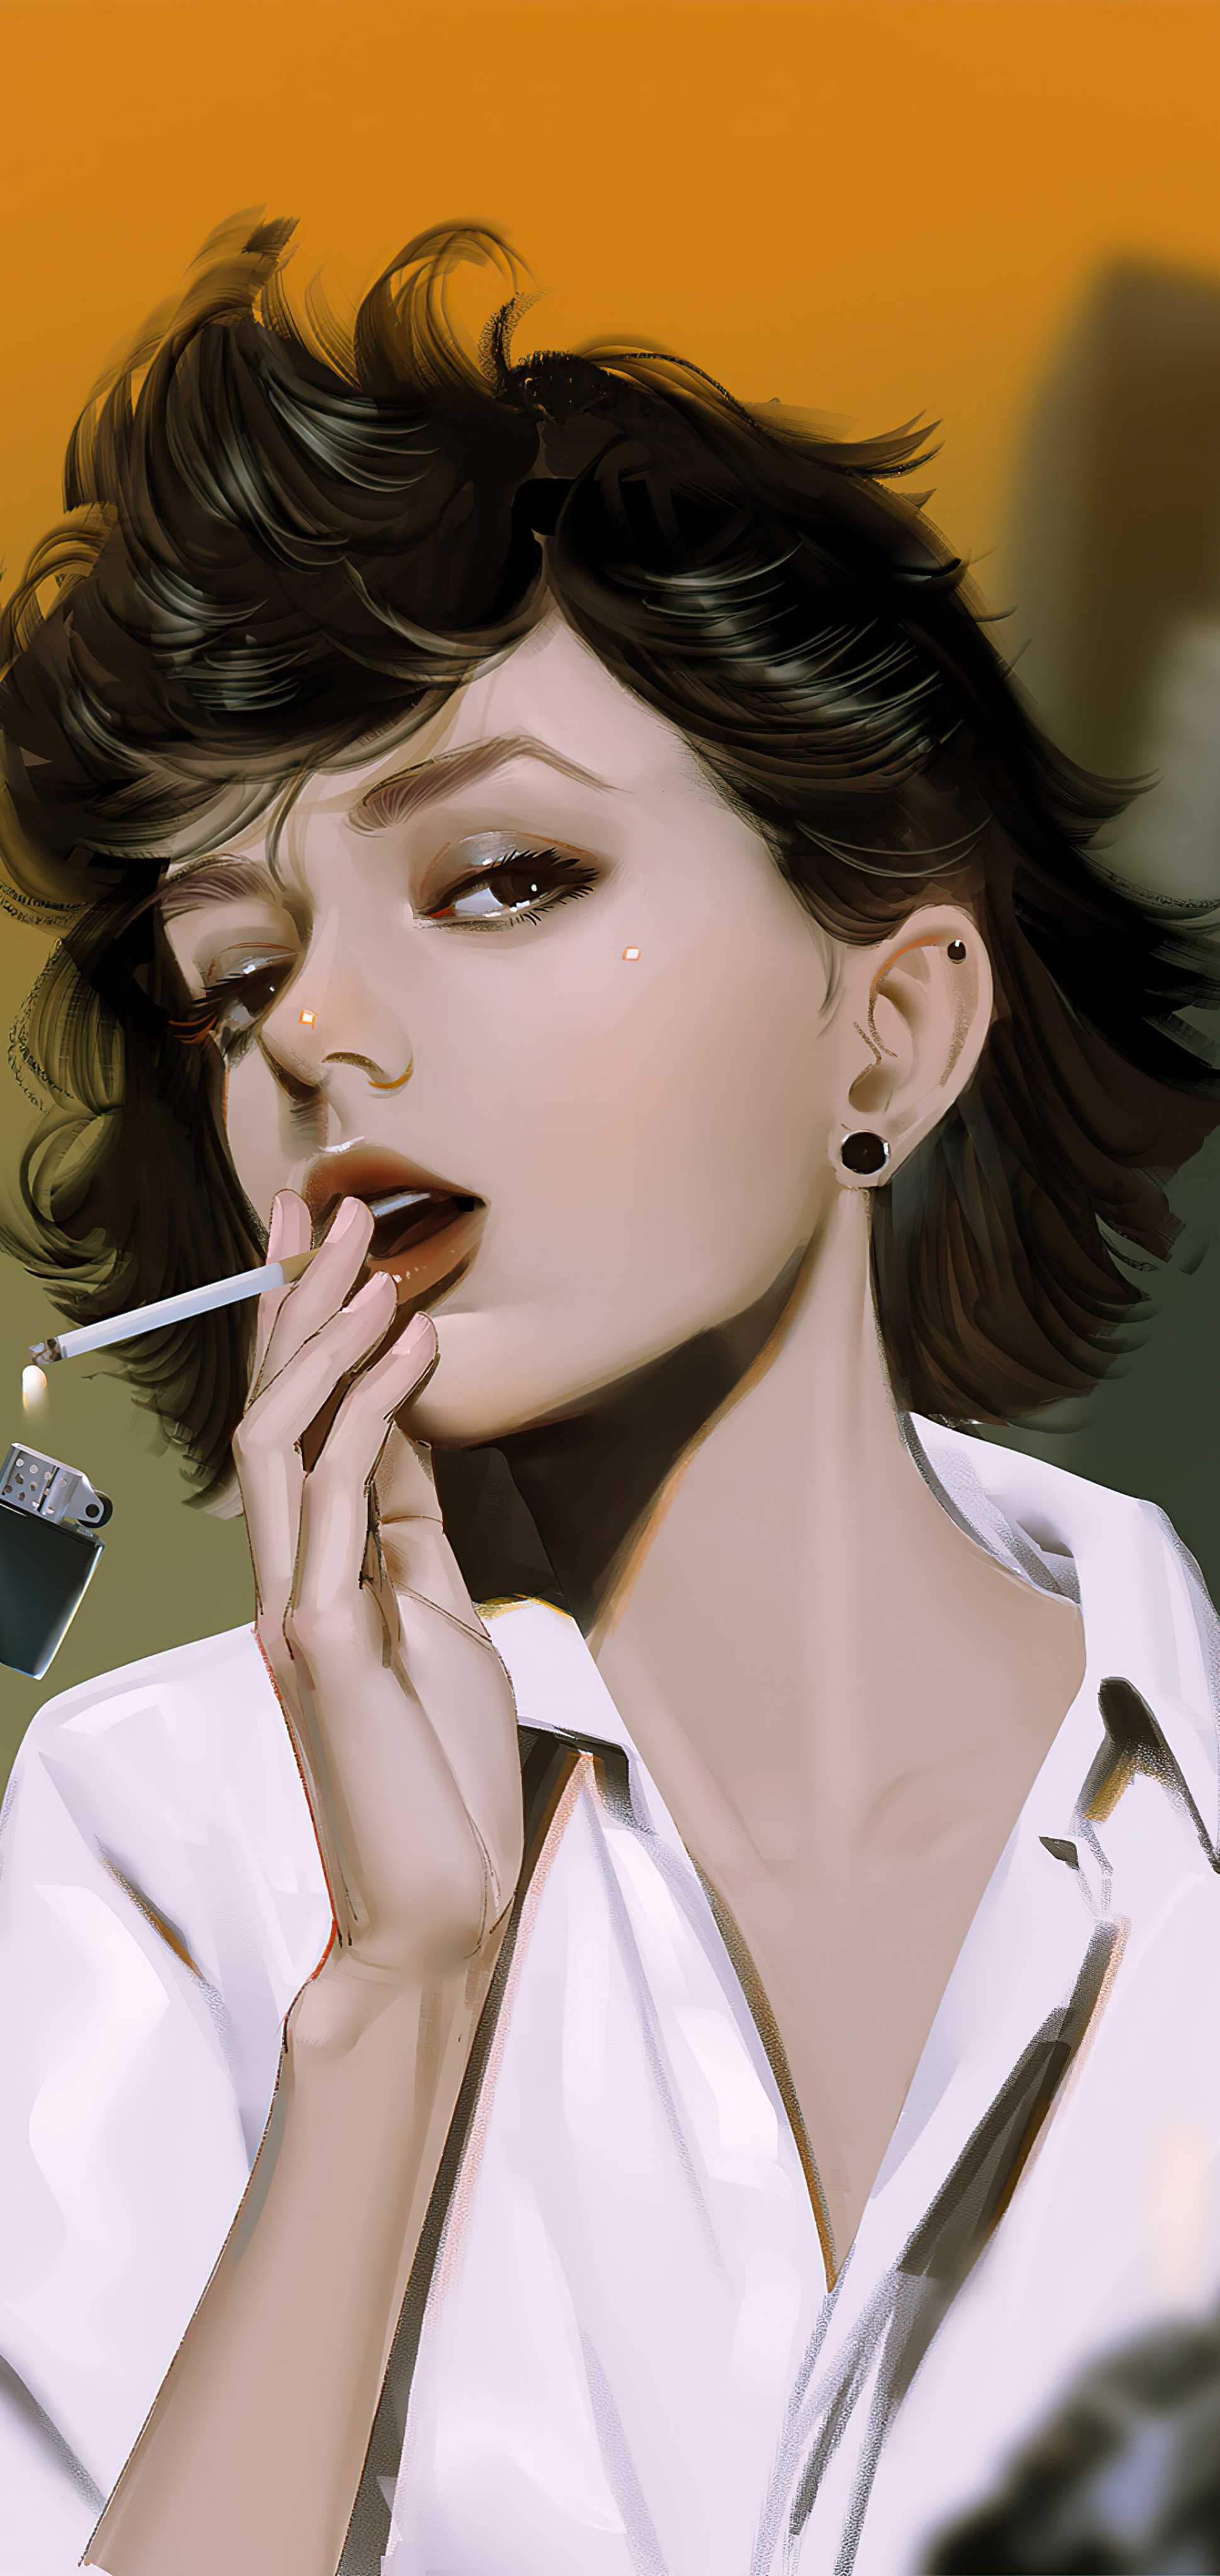 抽烟的女人图片漫画图片